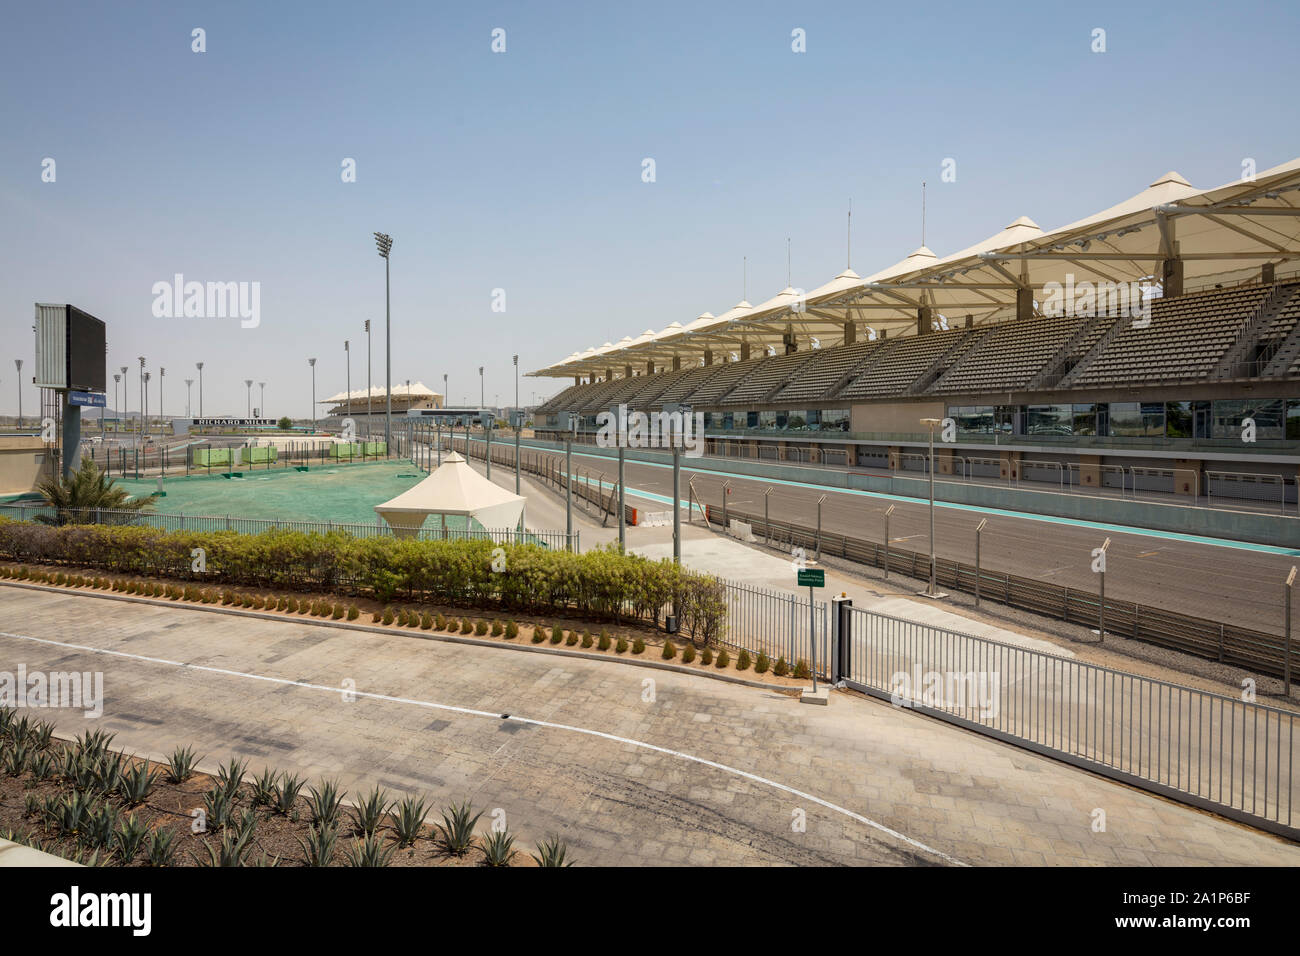 La tribuna en el Circuito Yas Marina, sede del Gran Premio de Abu Dhabi, Emiratos Arabes Unidos Foto de stock